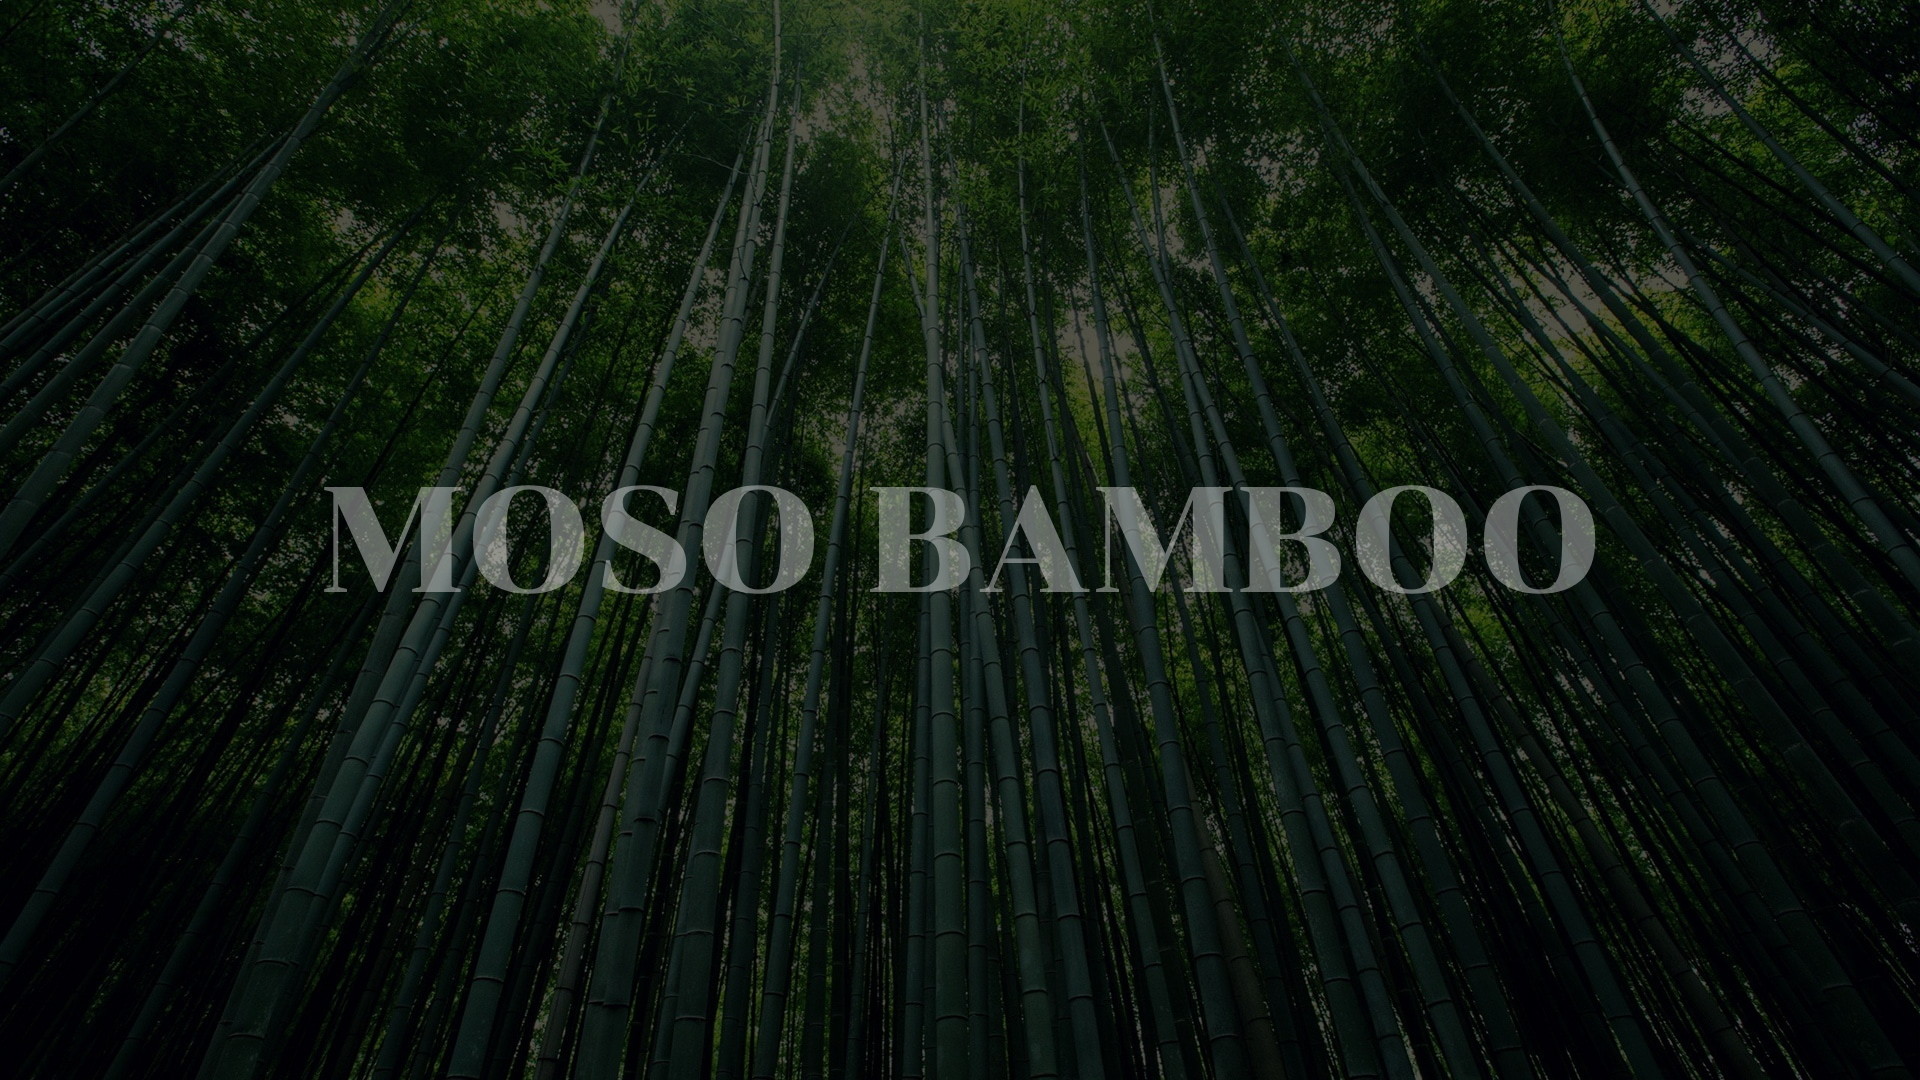 moso bamboo,bamboo cutting board, bamboo boards